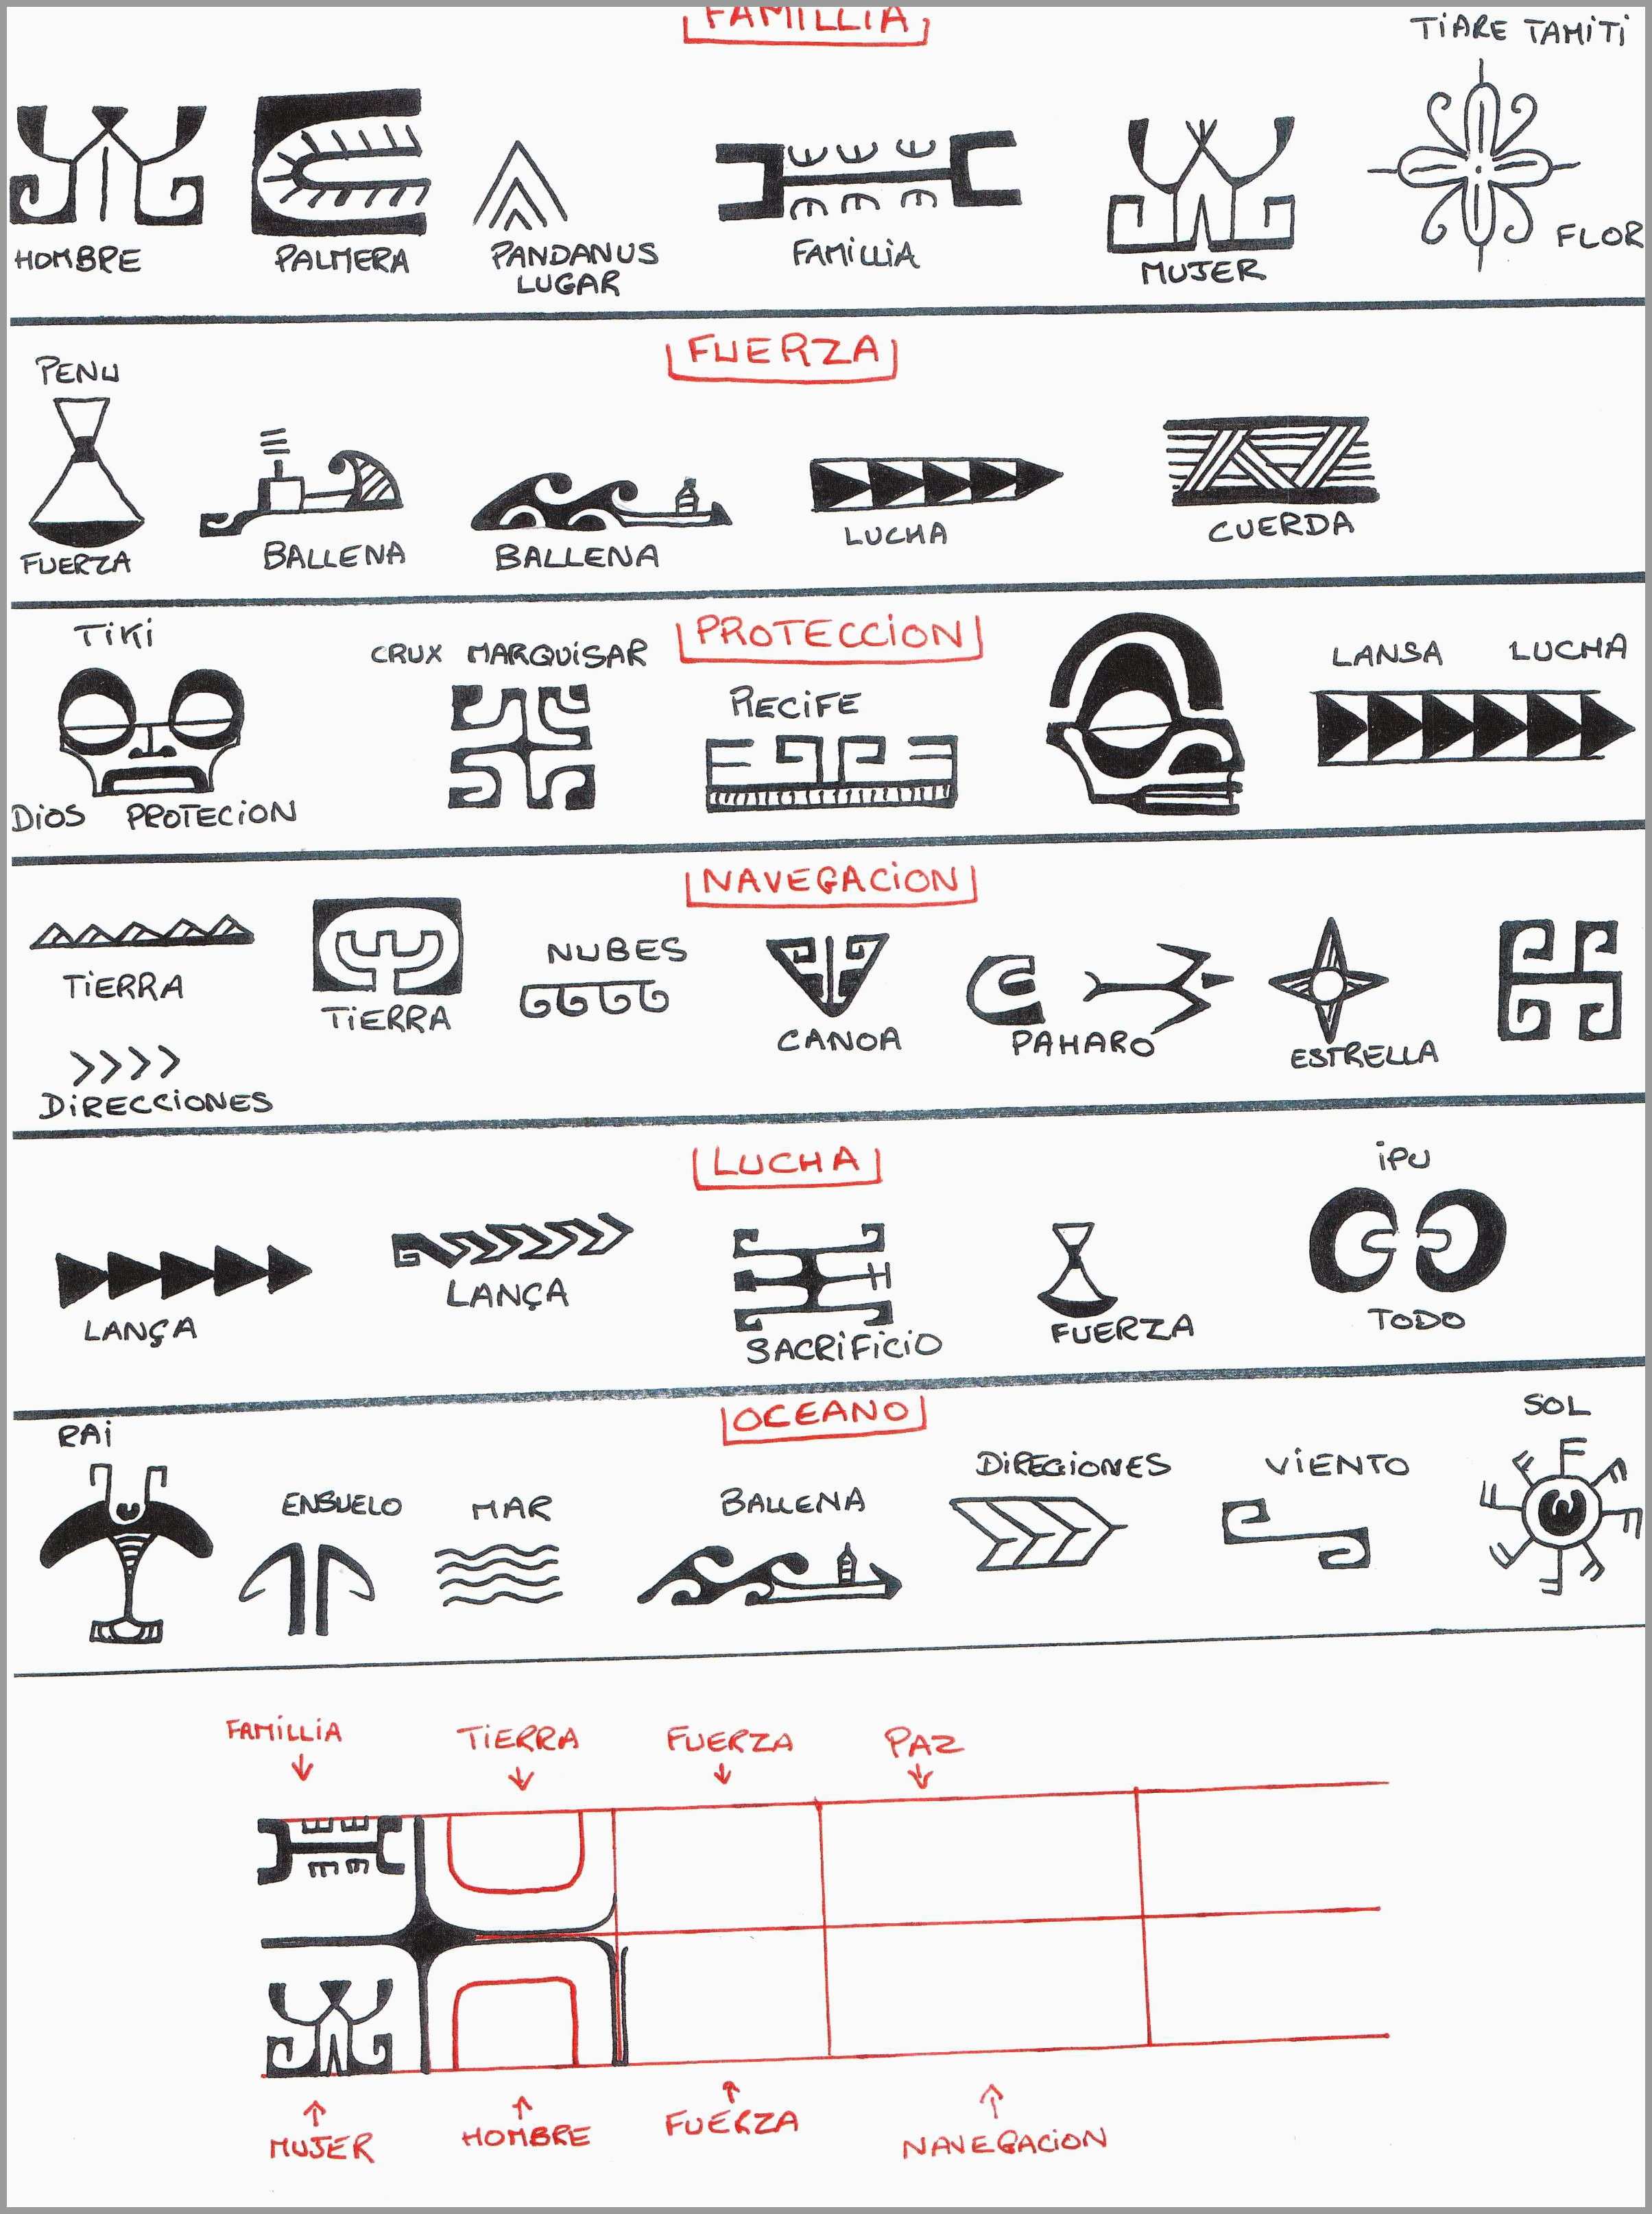 Telecharger dictionnaire des symboles du tatouage polynésien gratuit